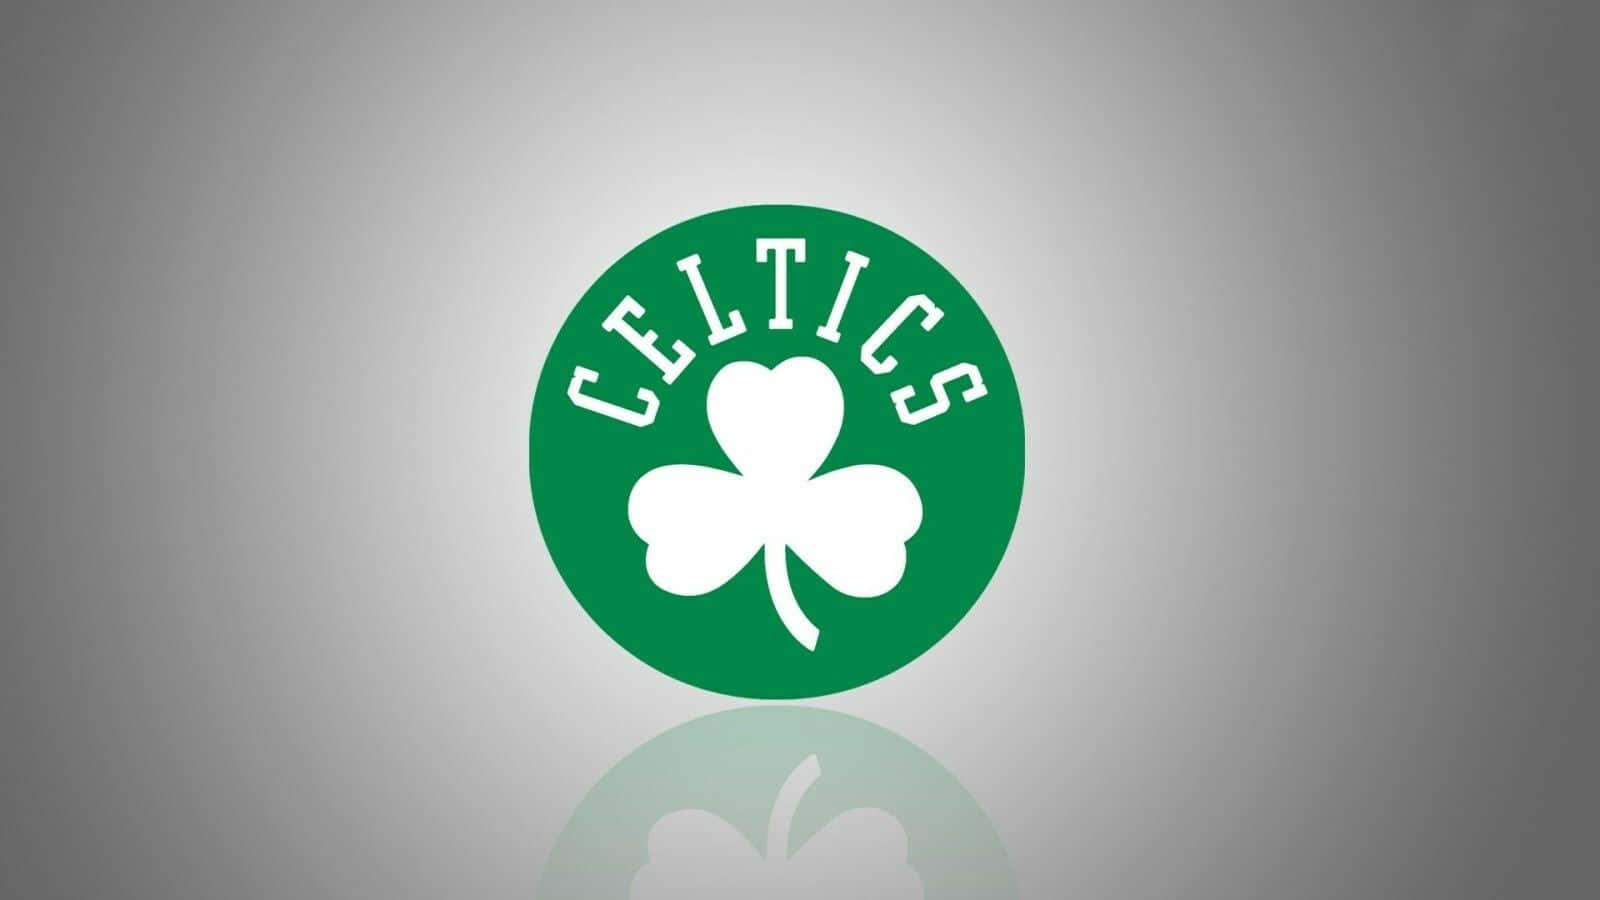 Celticsgröna Klöverlogo. Wallpaper